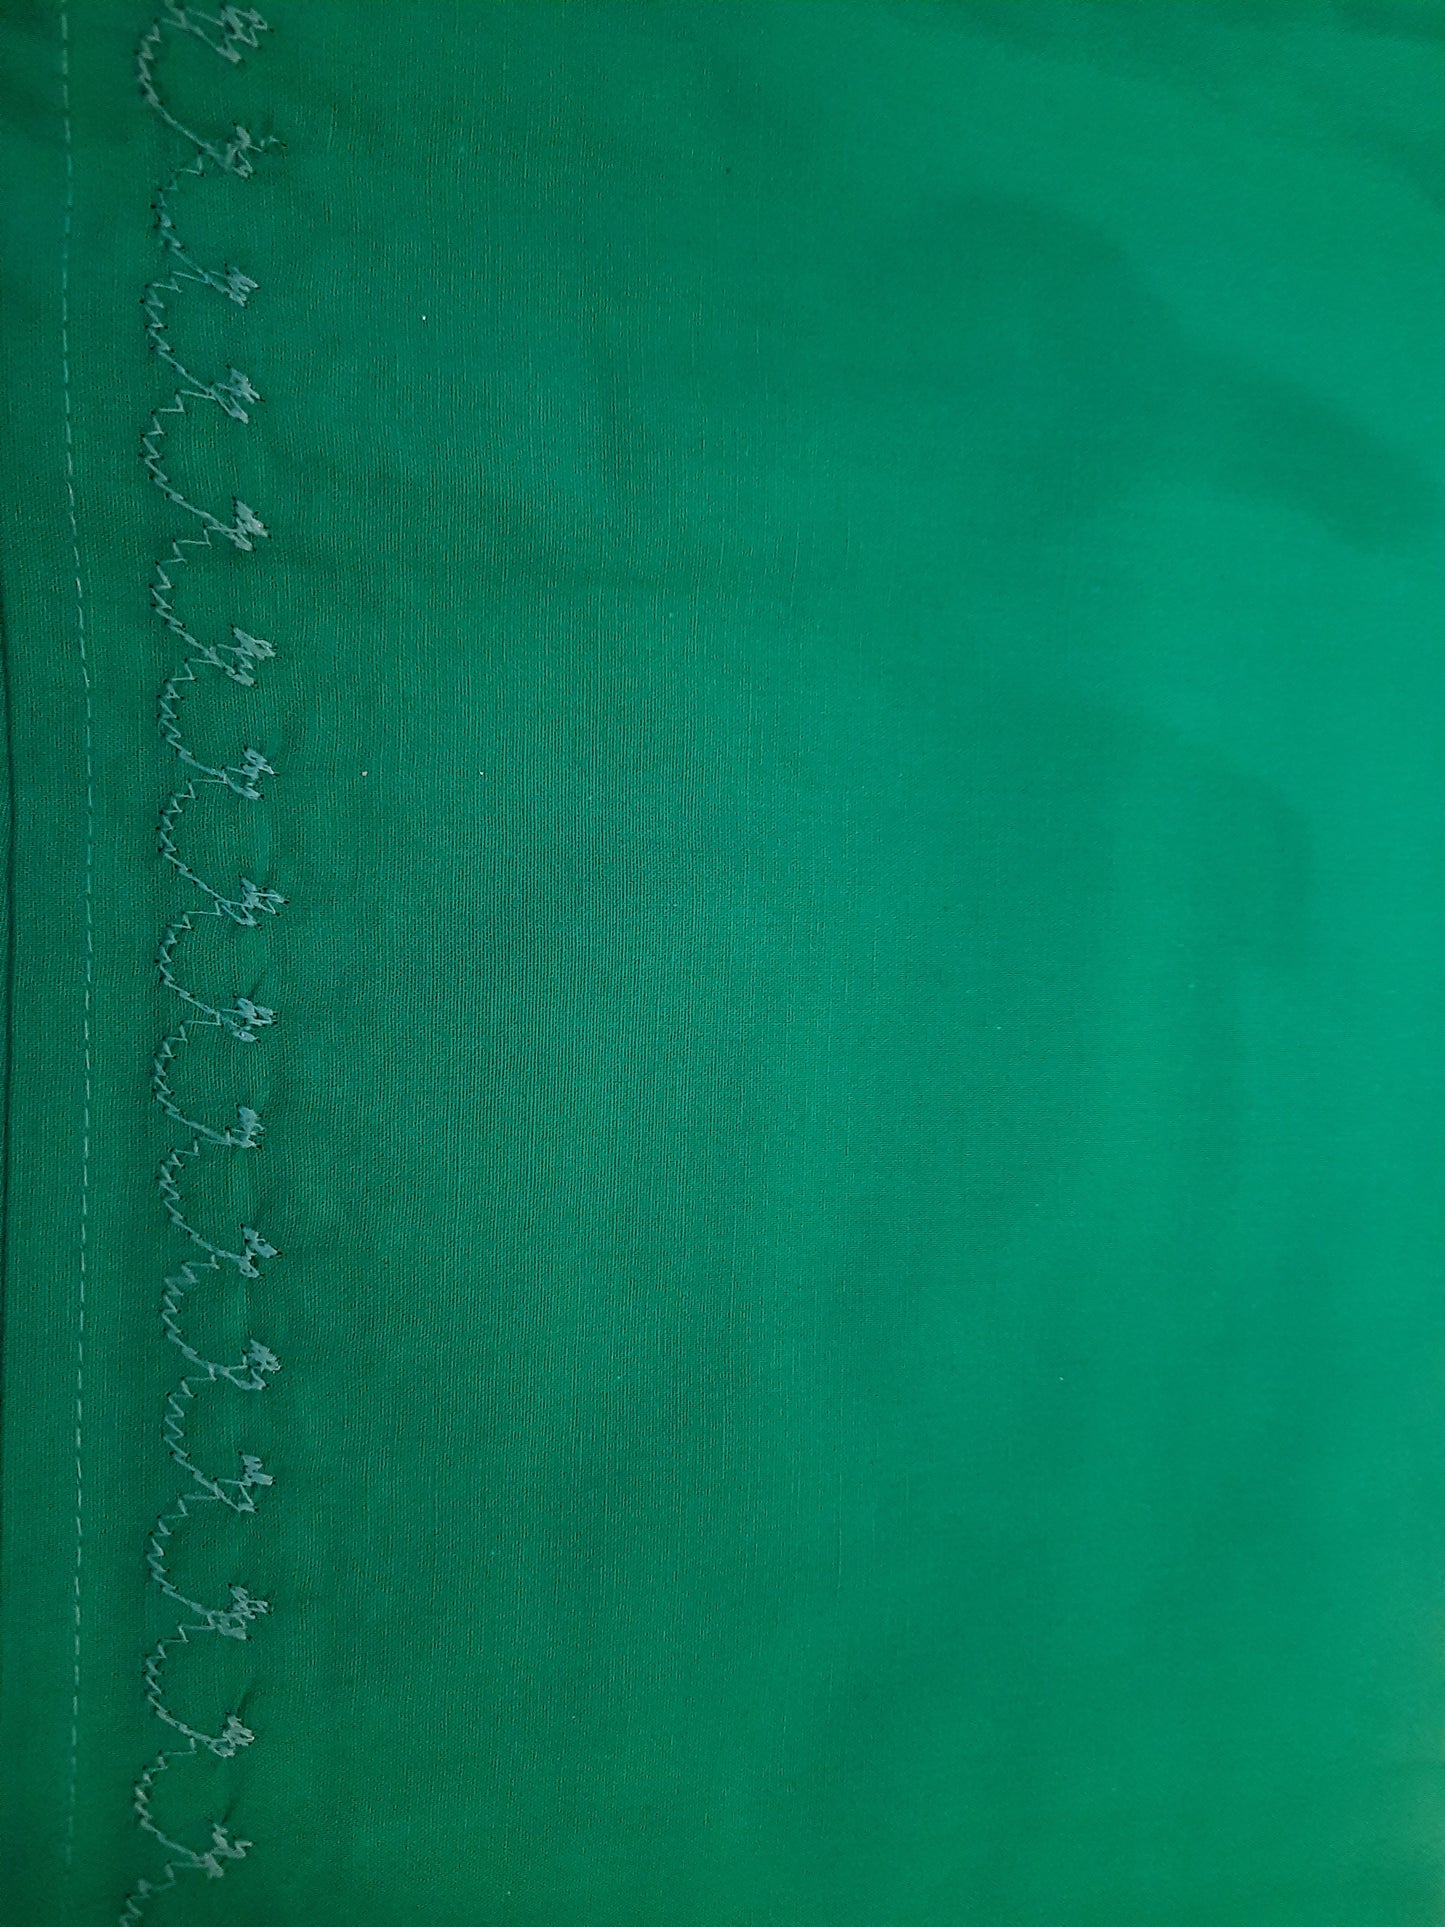 Alluring Aqua Green Cotton Readymade Petticoat For Women